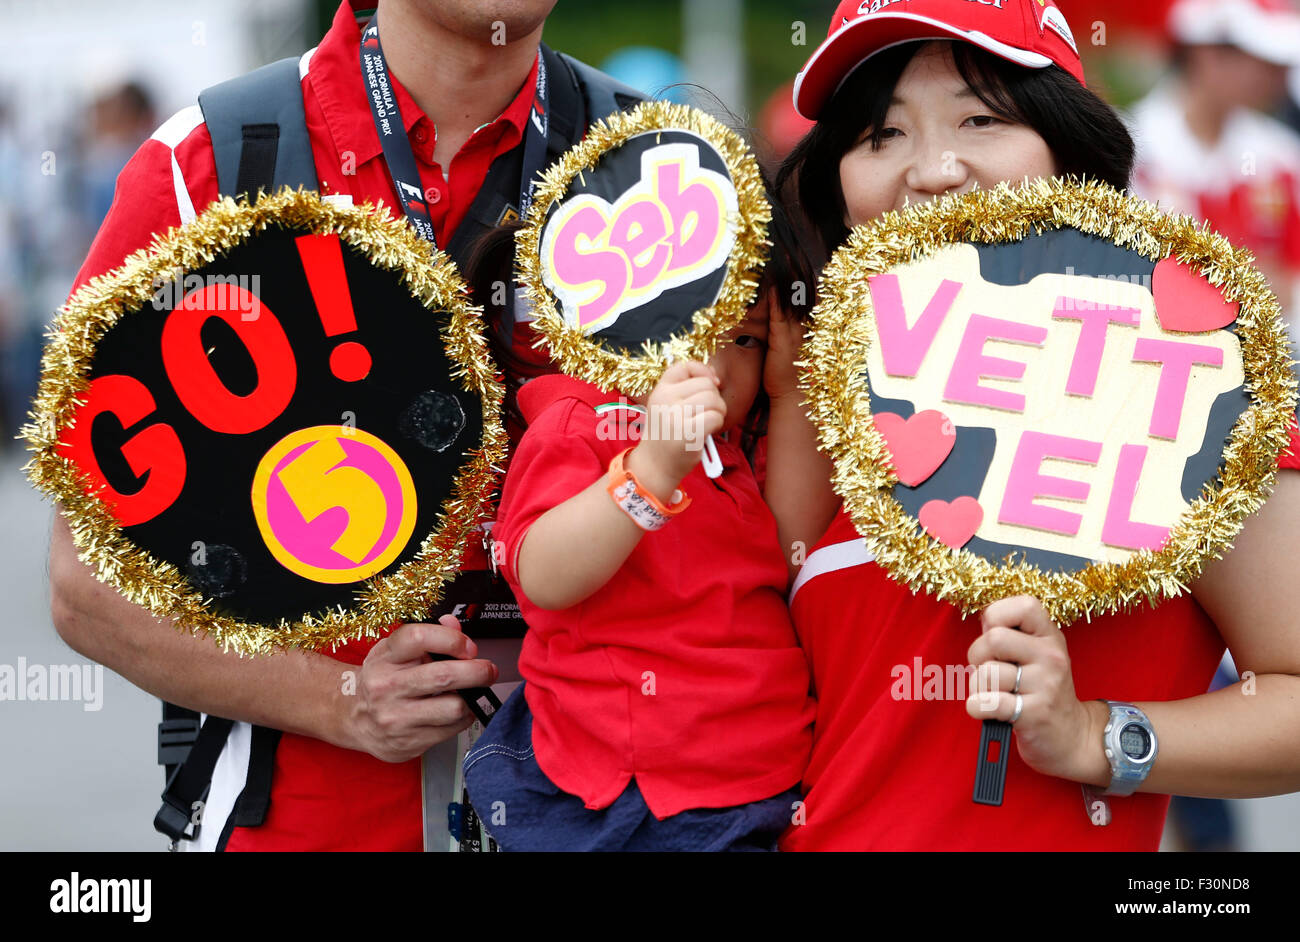 Motorsport: FIA Formula One World Championship 2015, Grand Prix von Japan, japanische F1-fans Stockfoto